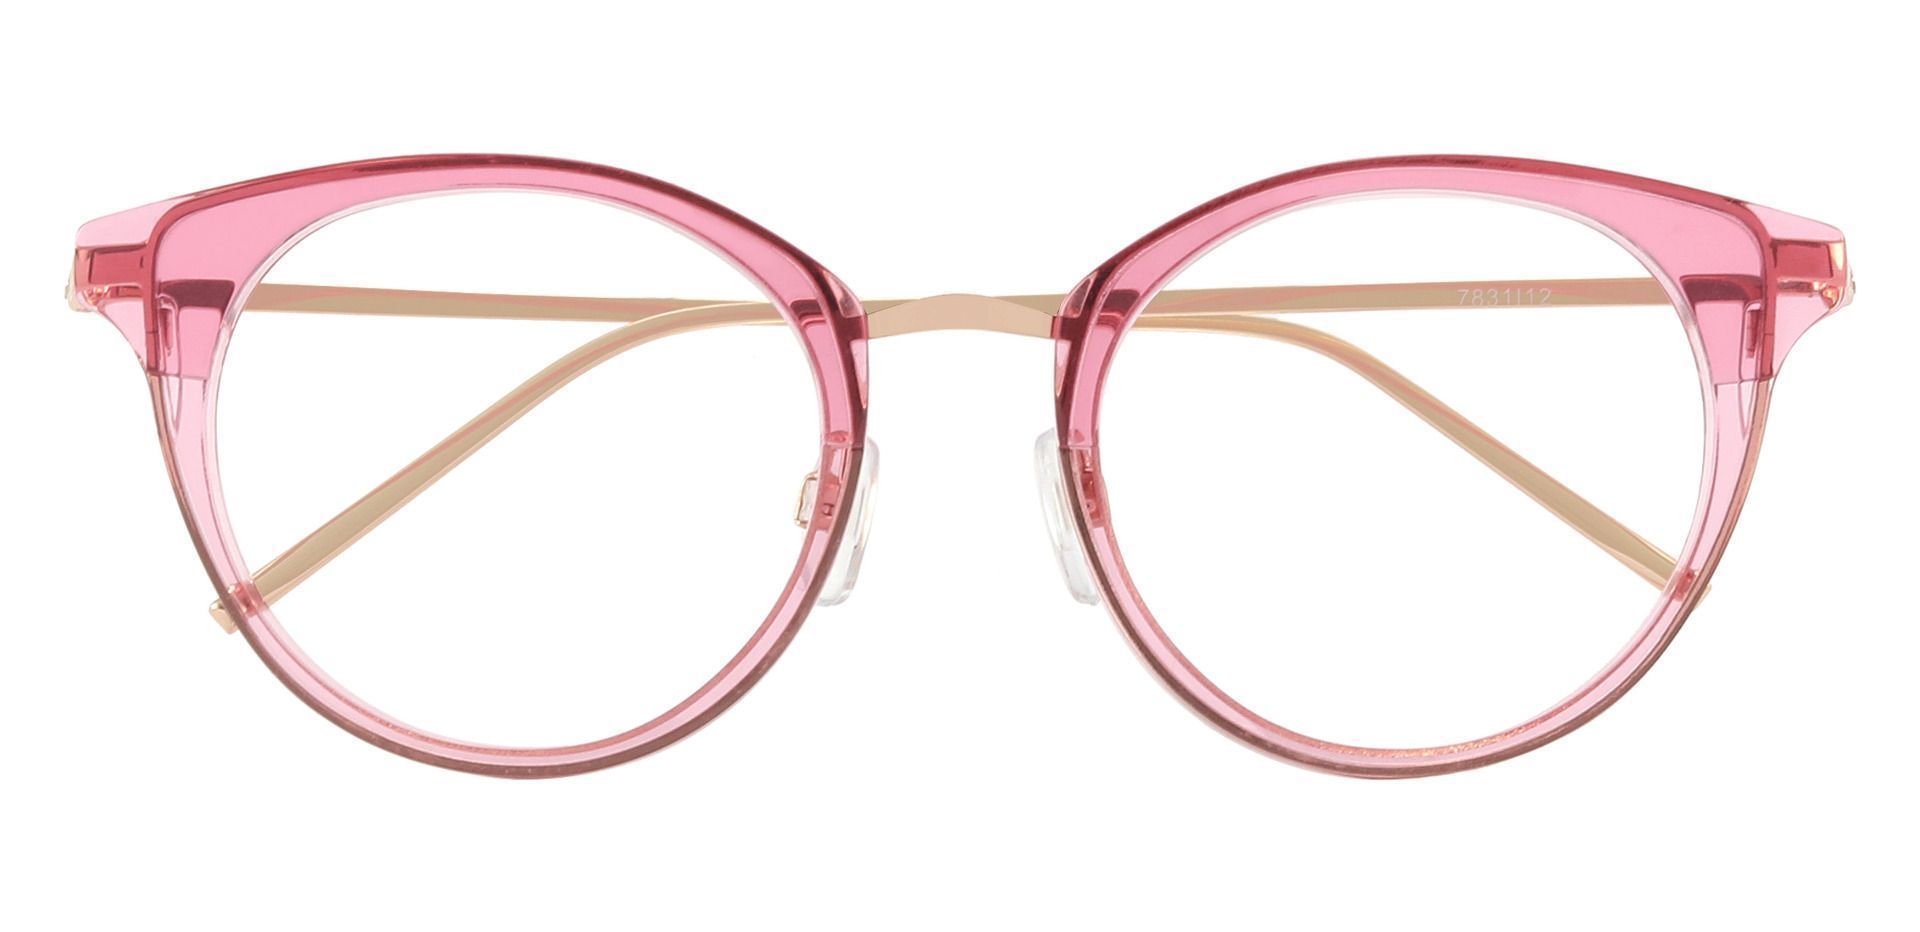 Laticia Cat Eye Prescription Glasses - Pink